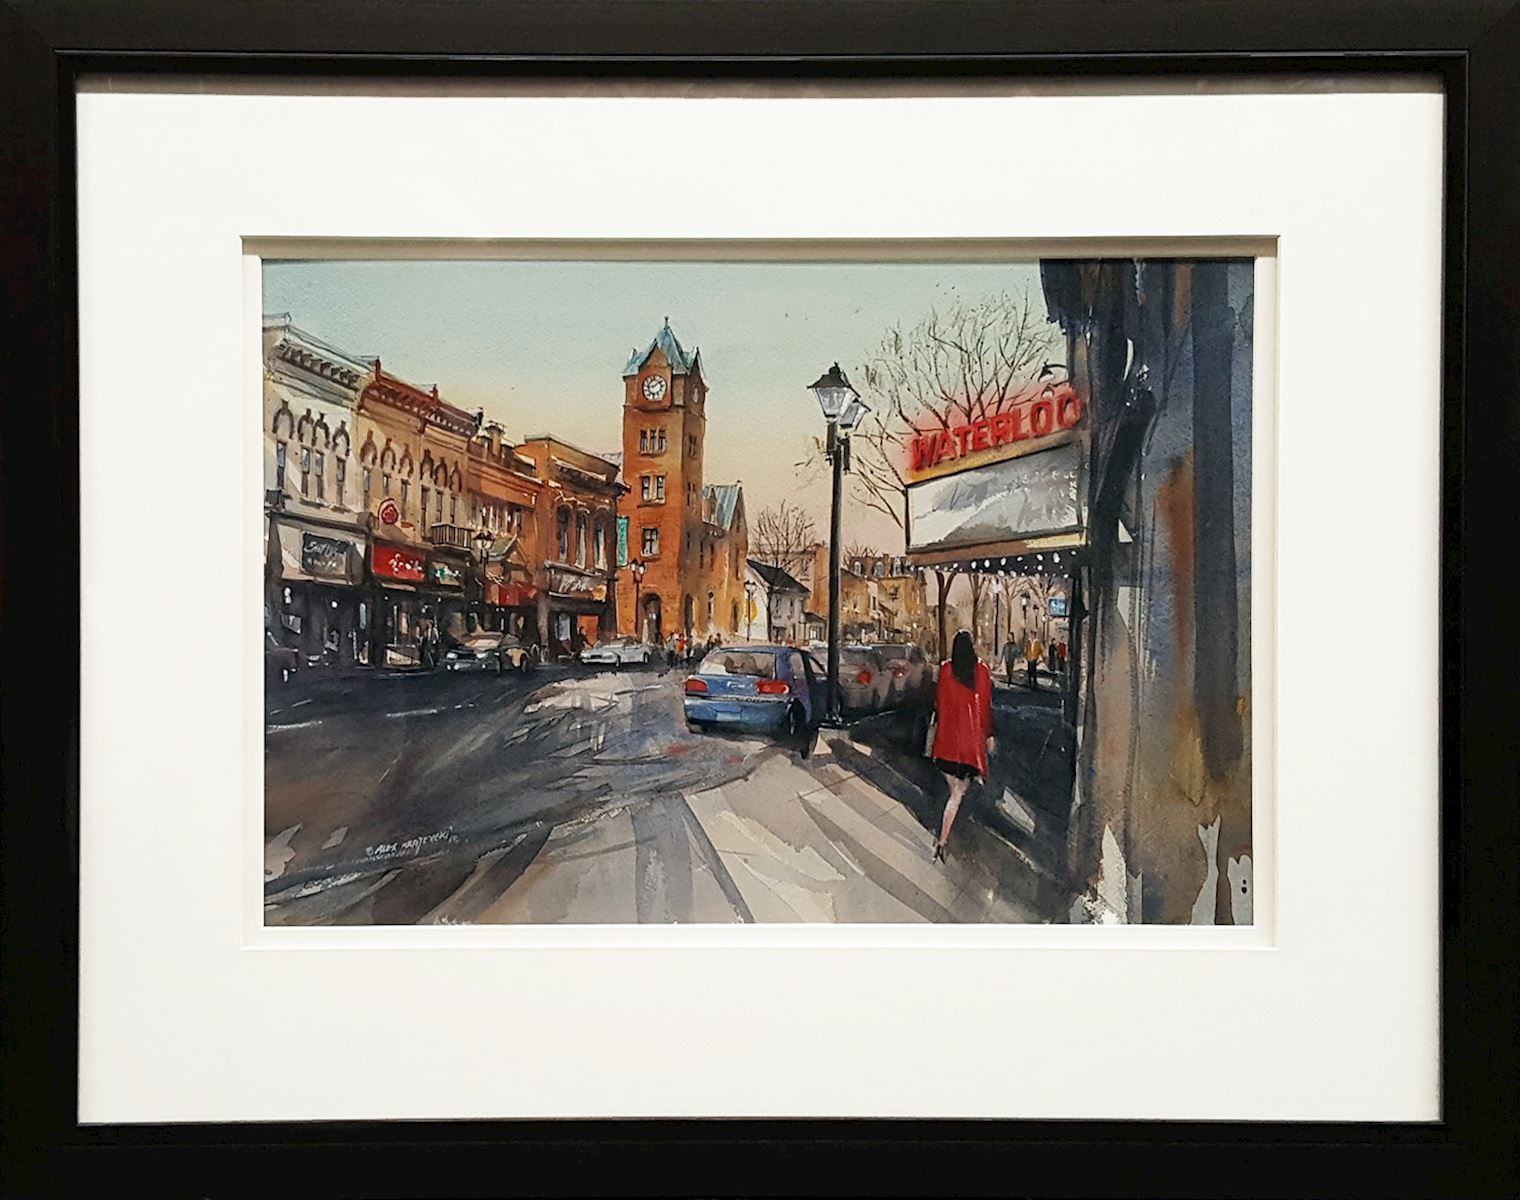 Framed original watercolor painting by Alex Krajewski depicting a street scene of Waterloo, Ontario.